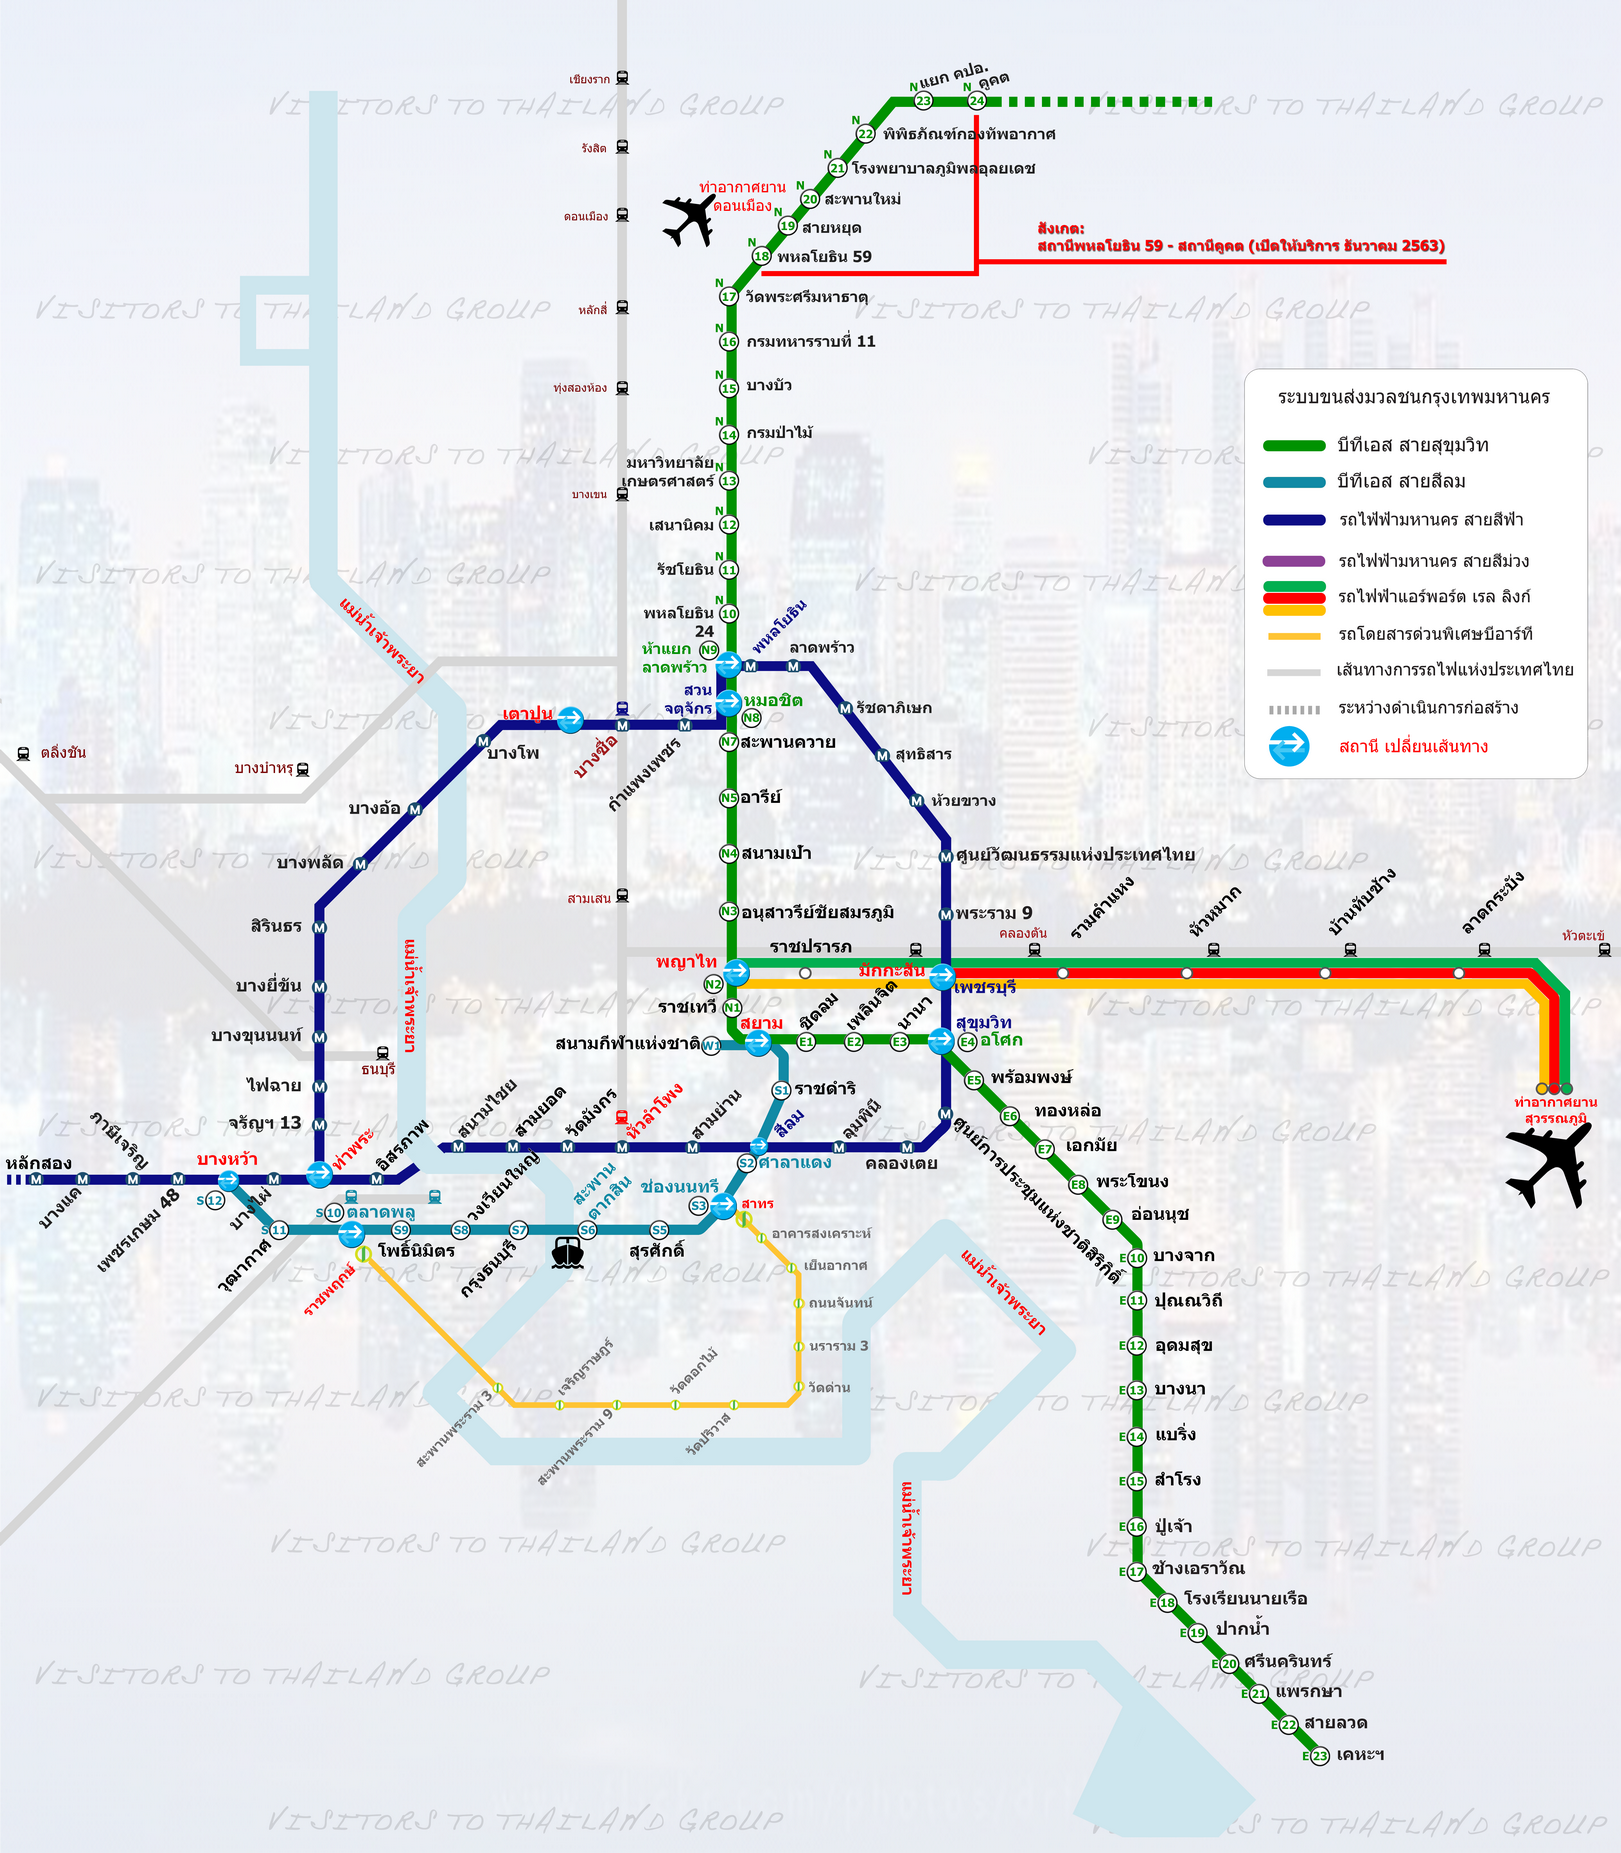 Bangkok Mass Transit Map